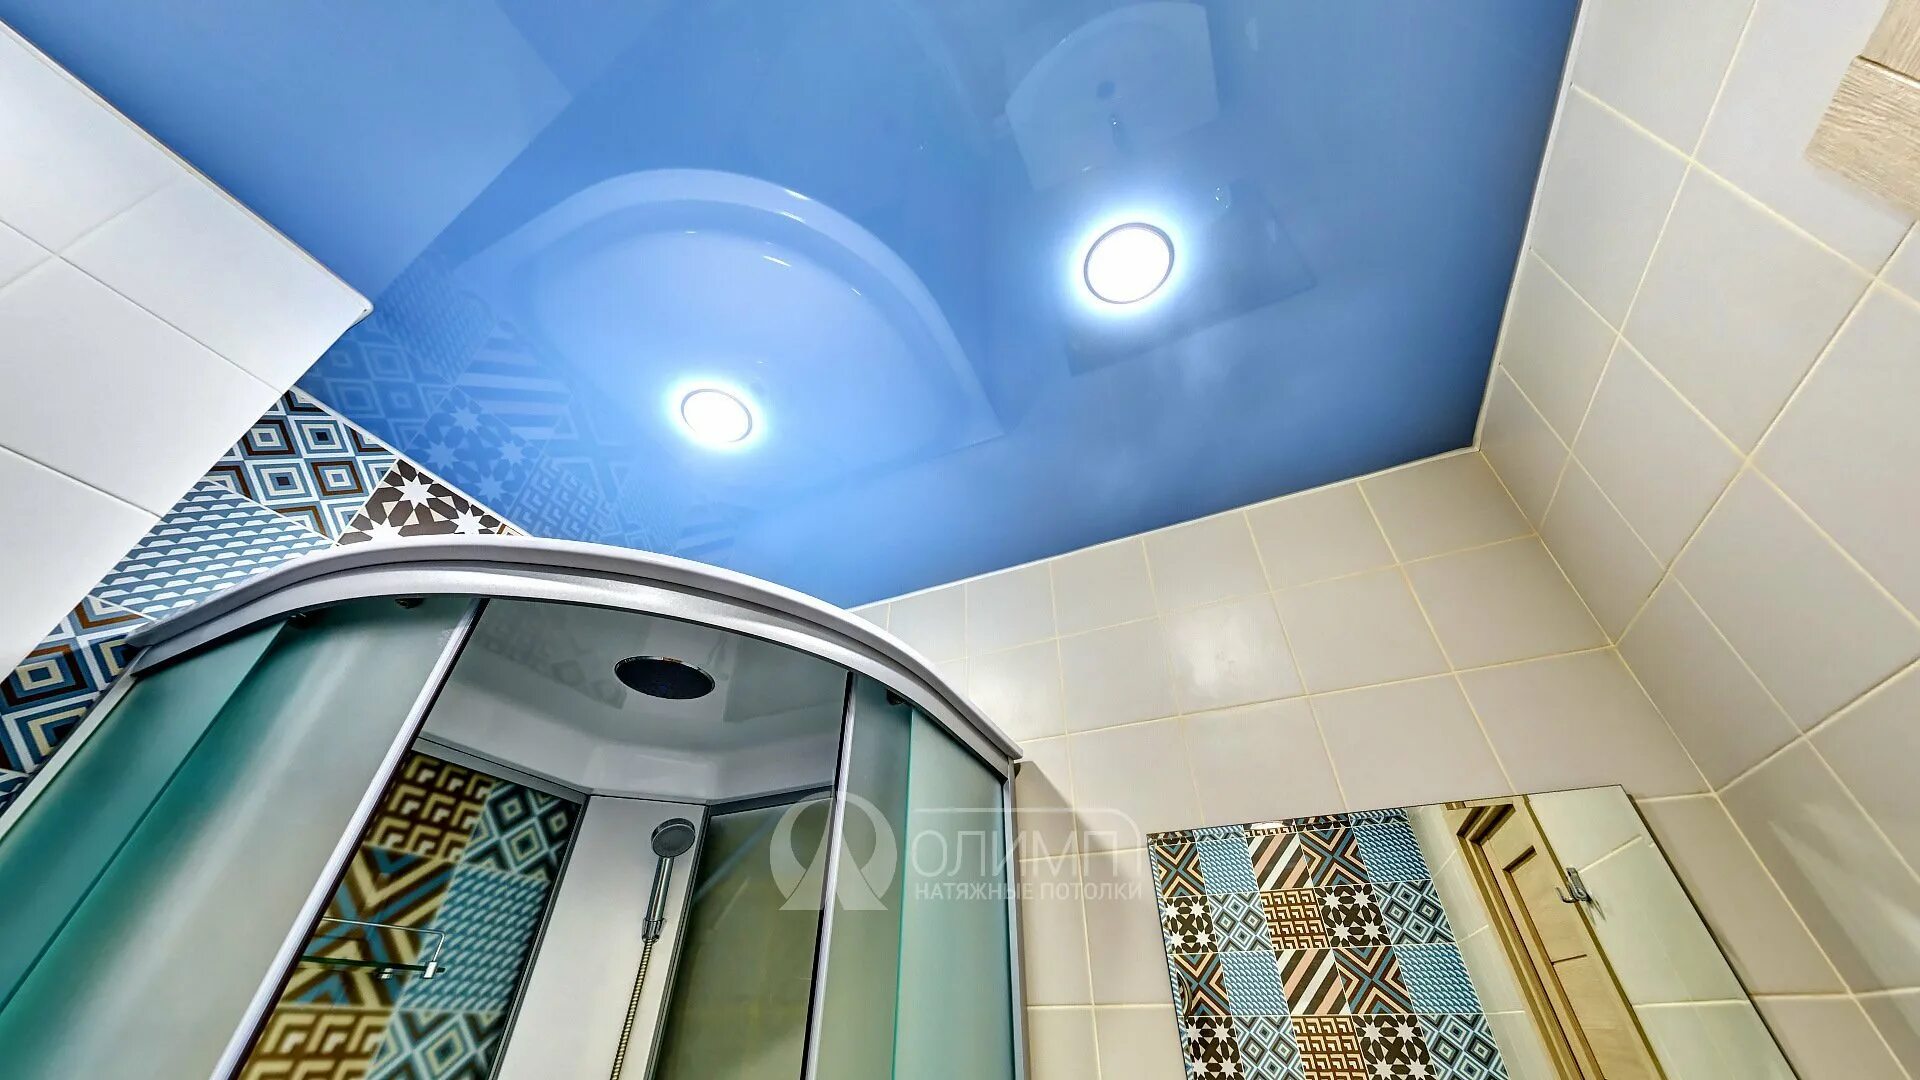 Глянцевый потолок в ванной. Натяжной потолок в ванной. Синий натяжной потолок в ванной. Натяжной потолок в ванную. Синий потолок в ванной.